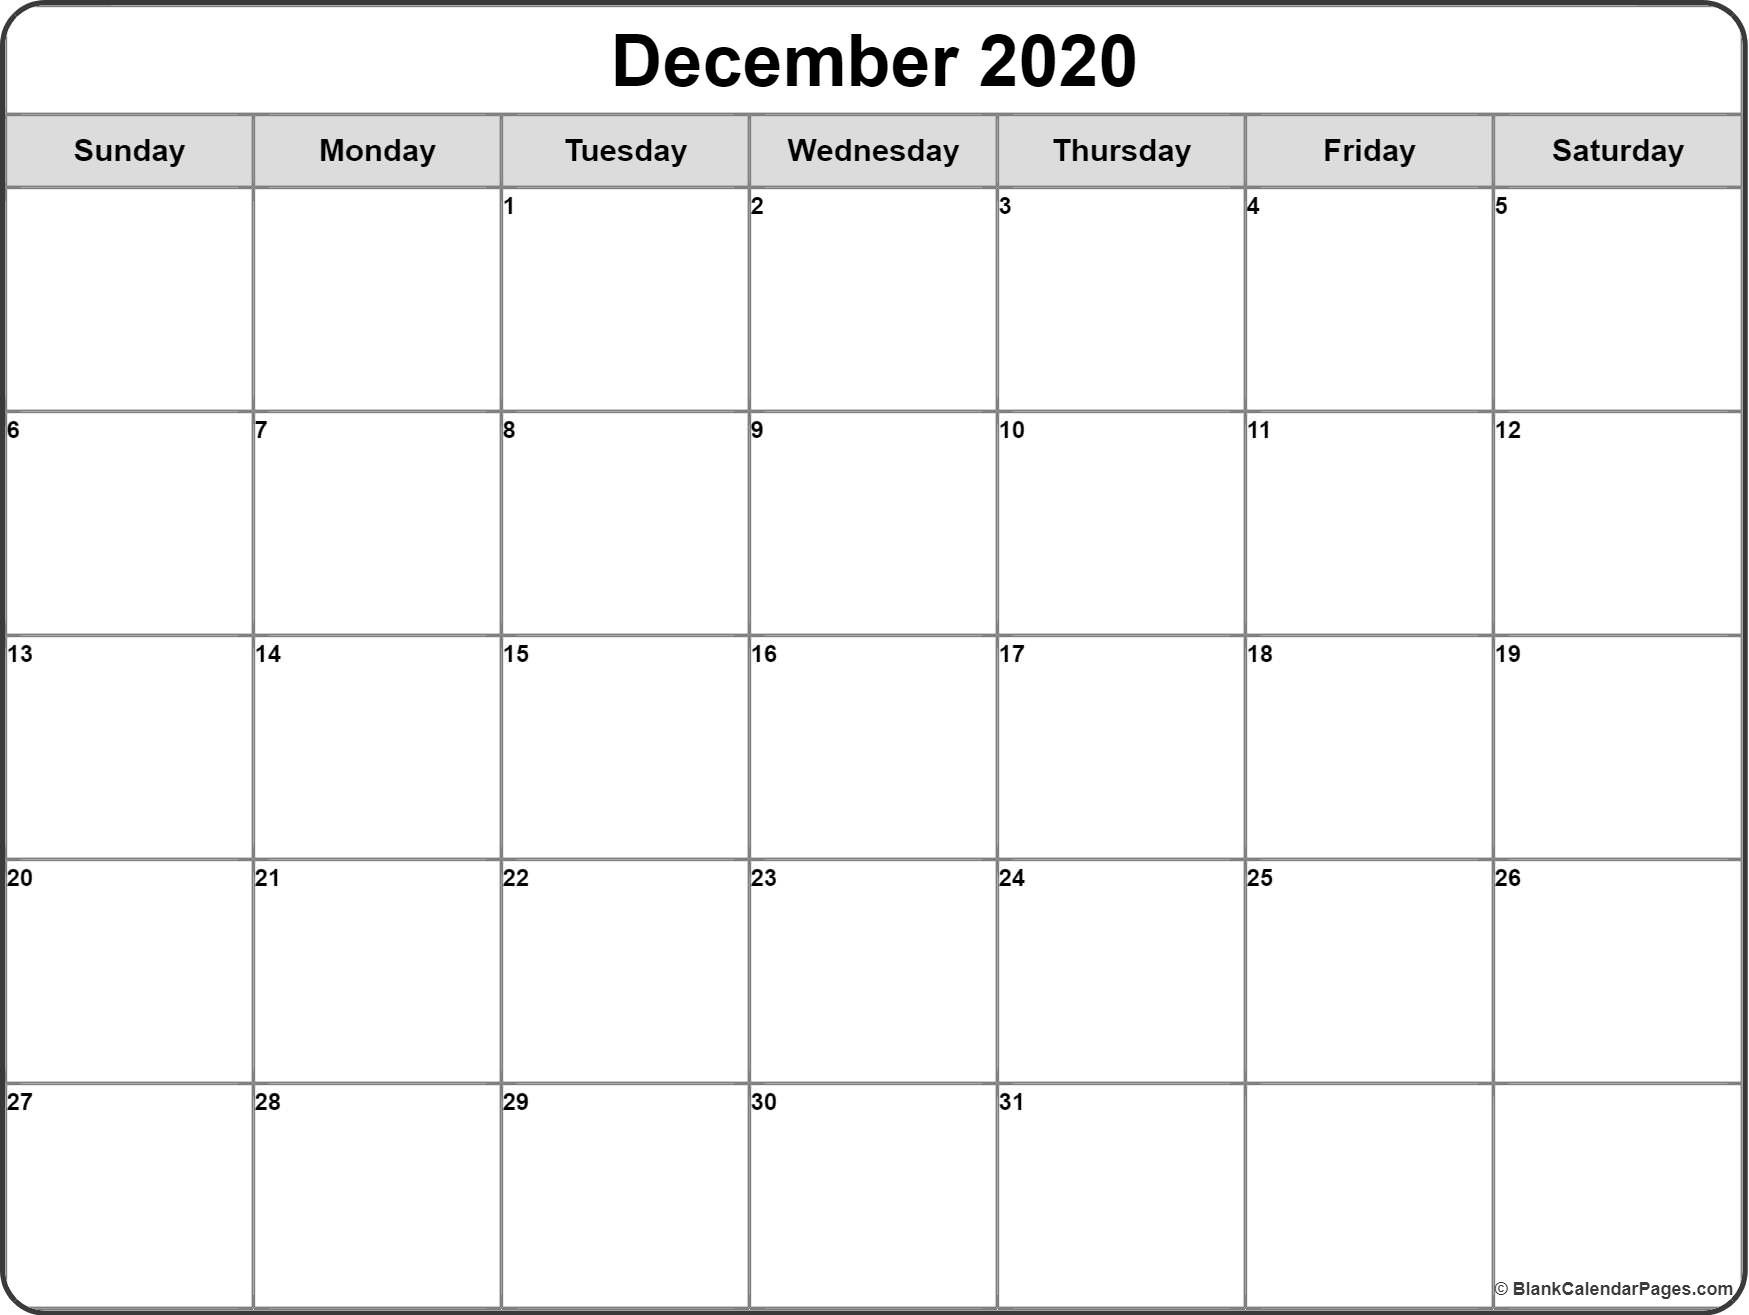 CAL=December 2020 calendar